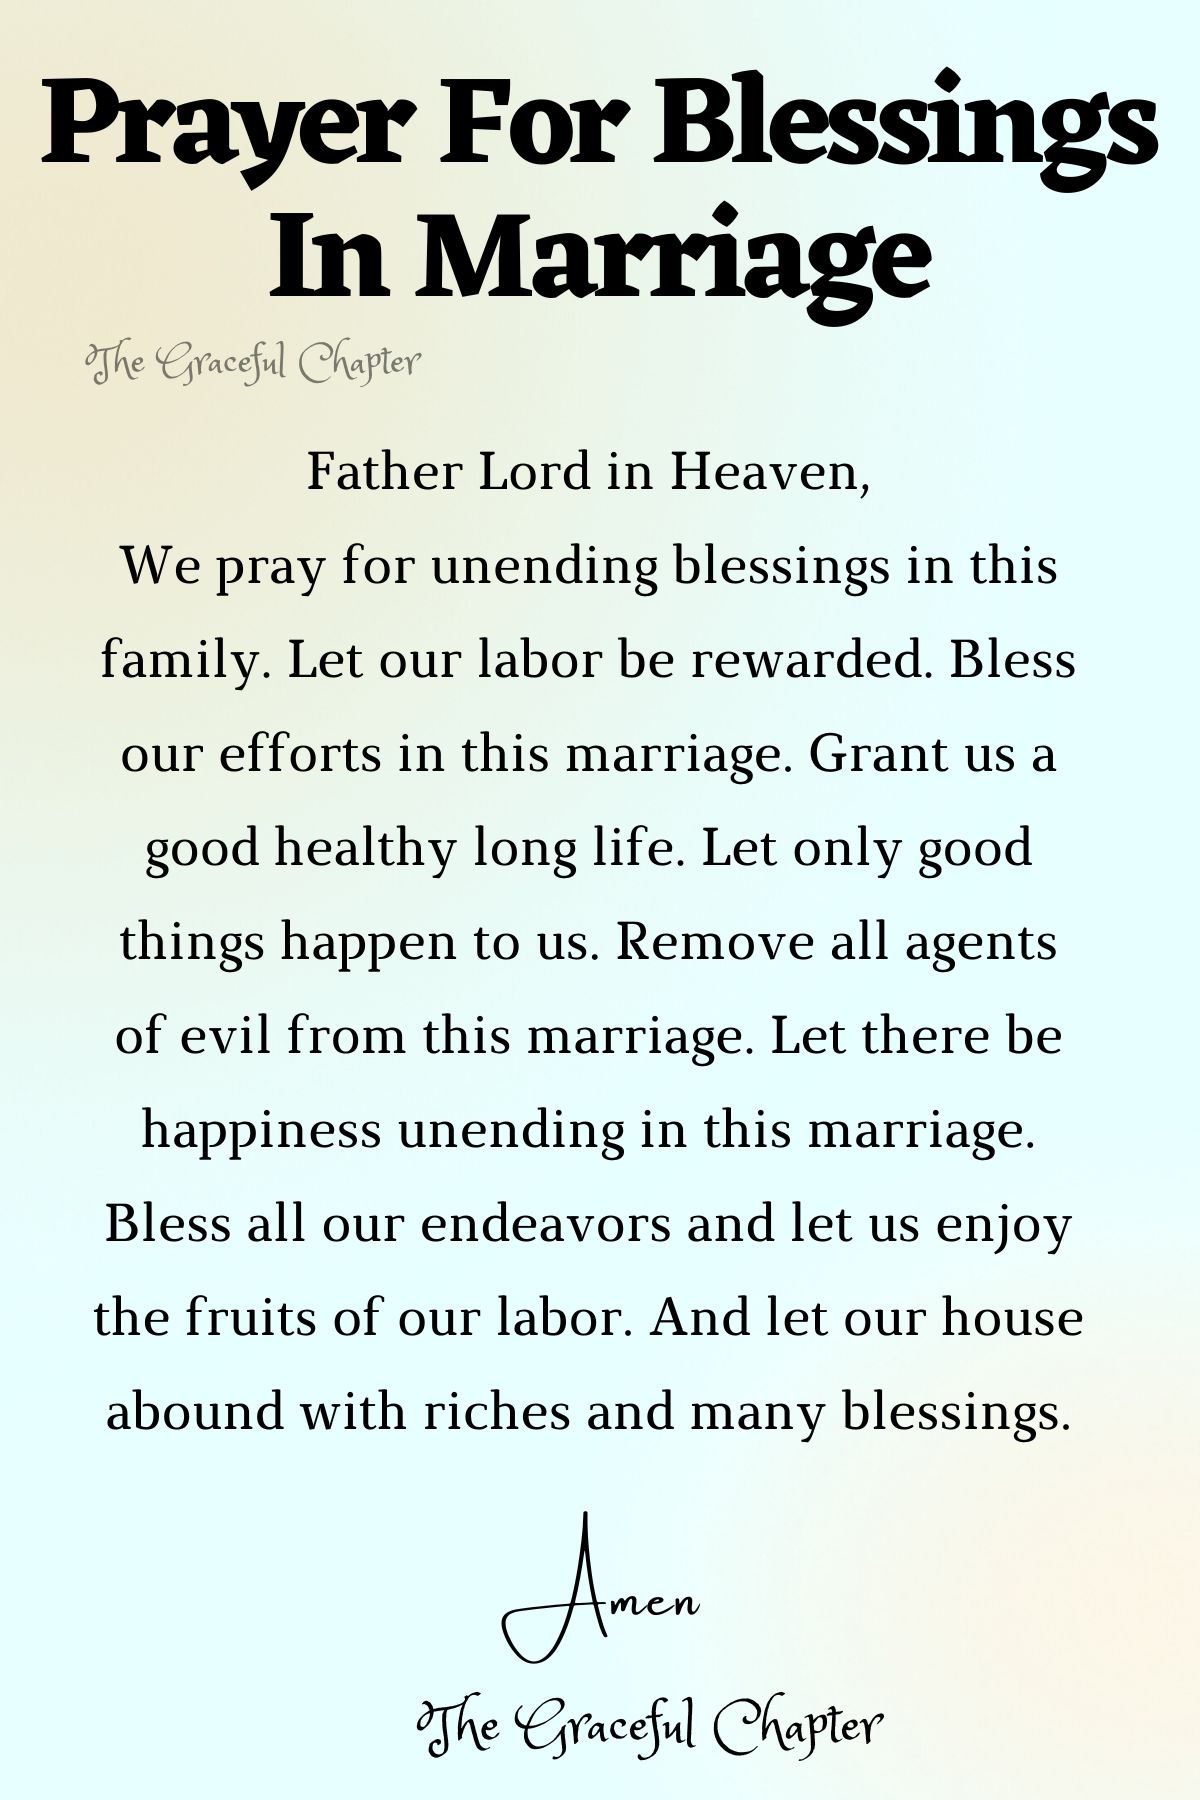 Prayer for children in marriage